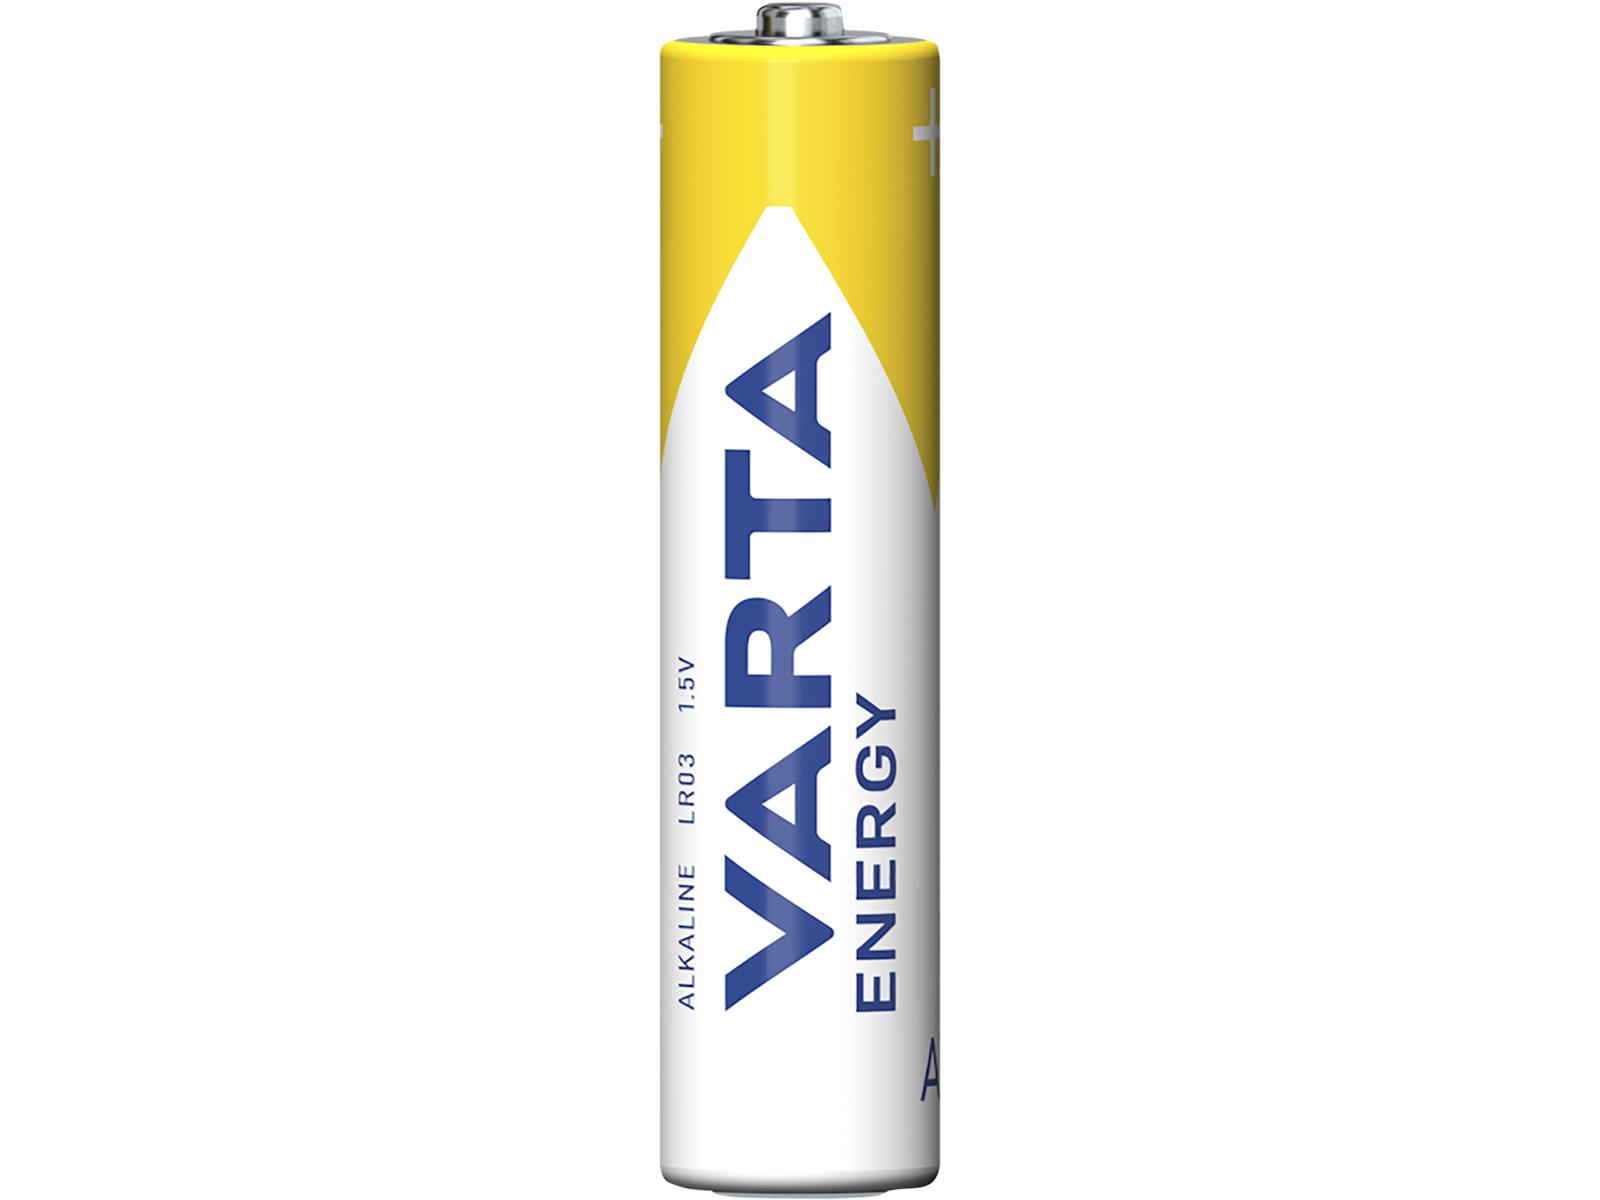 Micro-Batterie VARTA ''Energy'' Alkaline, Typ AAA, LR06, 1,5V, 10er Pack